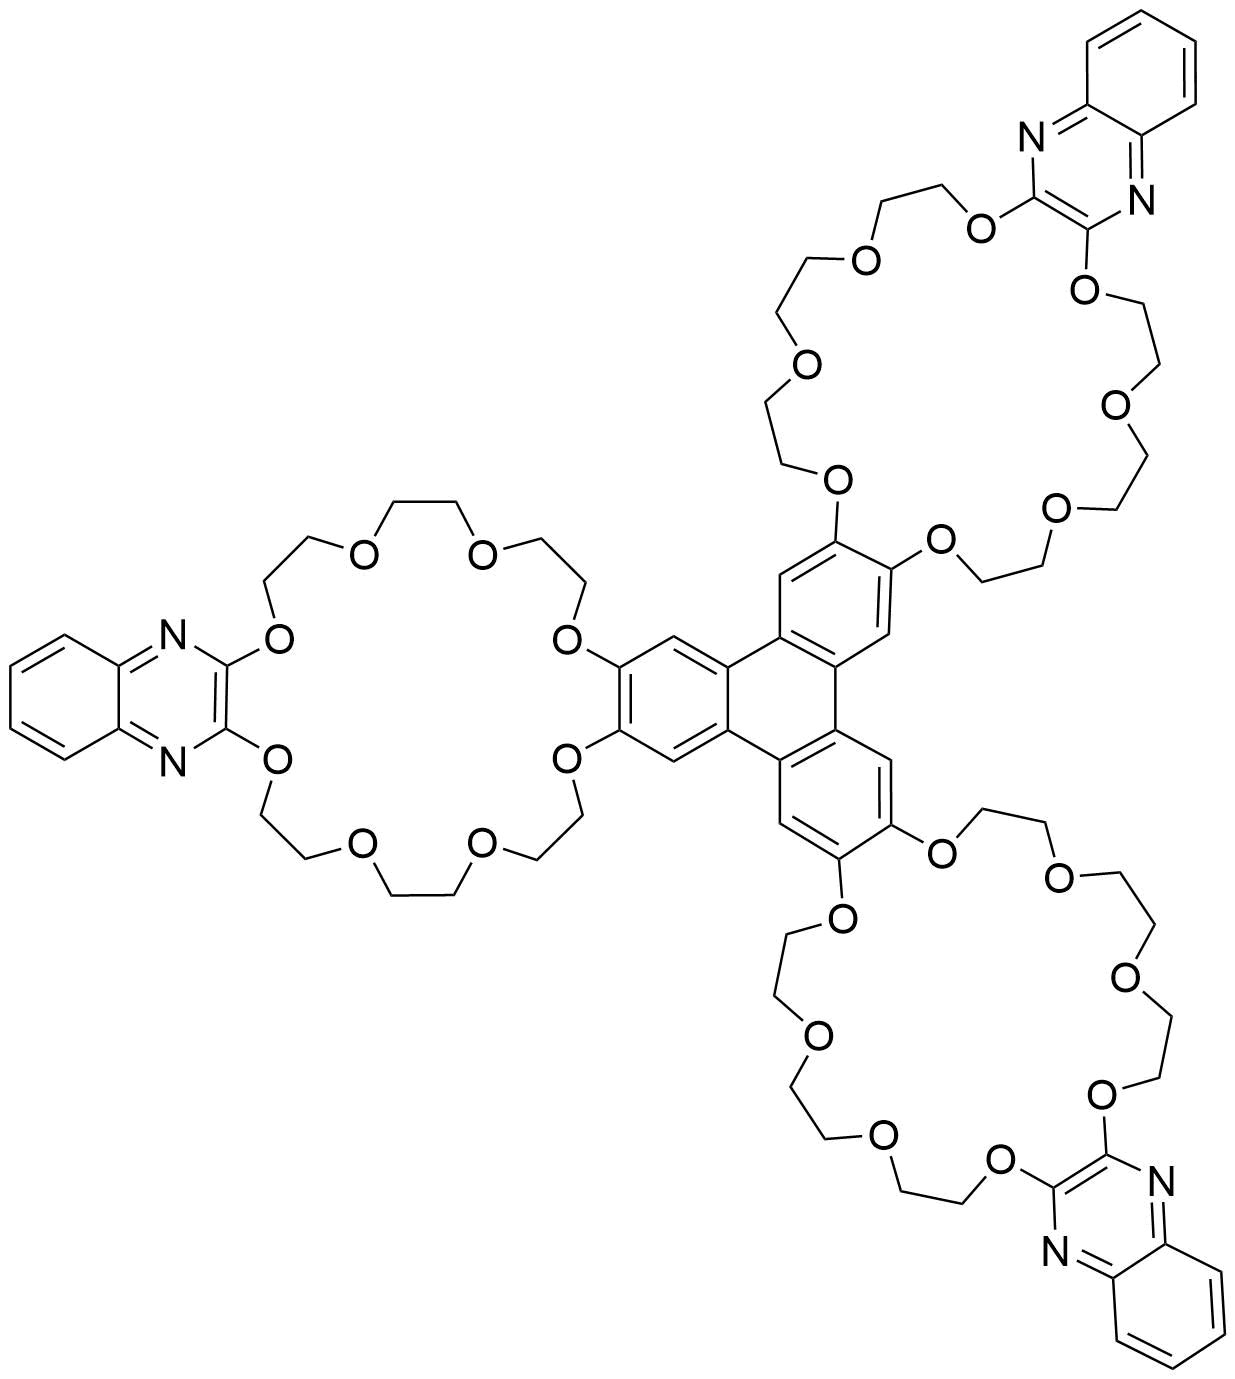 Tris 2 3 quinoxalinediylbis%28oxyethyleneoxyethyleneoxyethyleneoxy%29 triphenylene